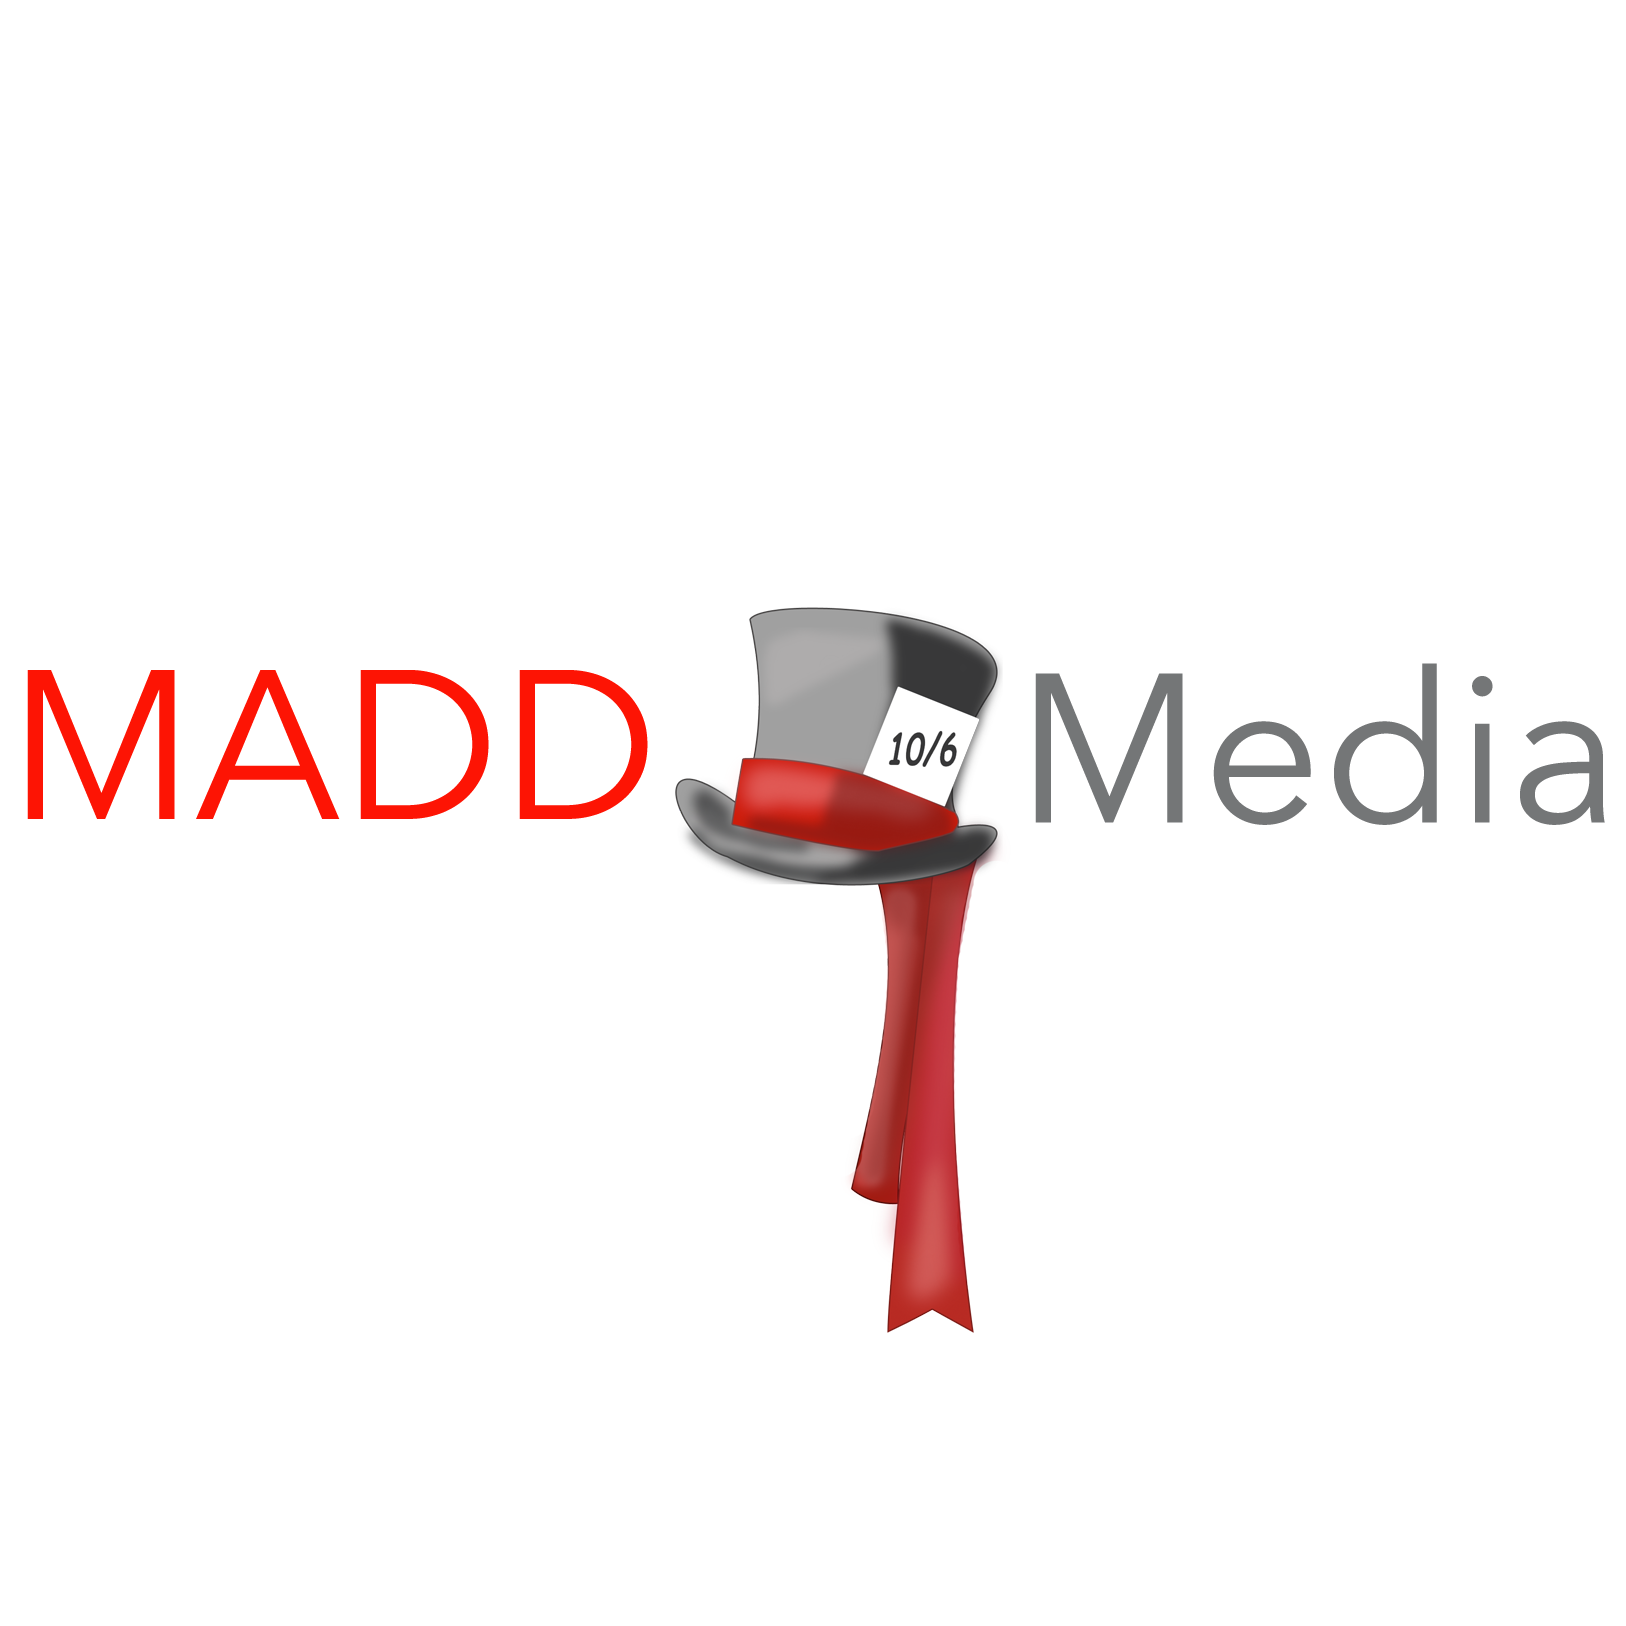 MADD Media